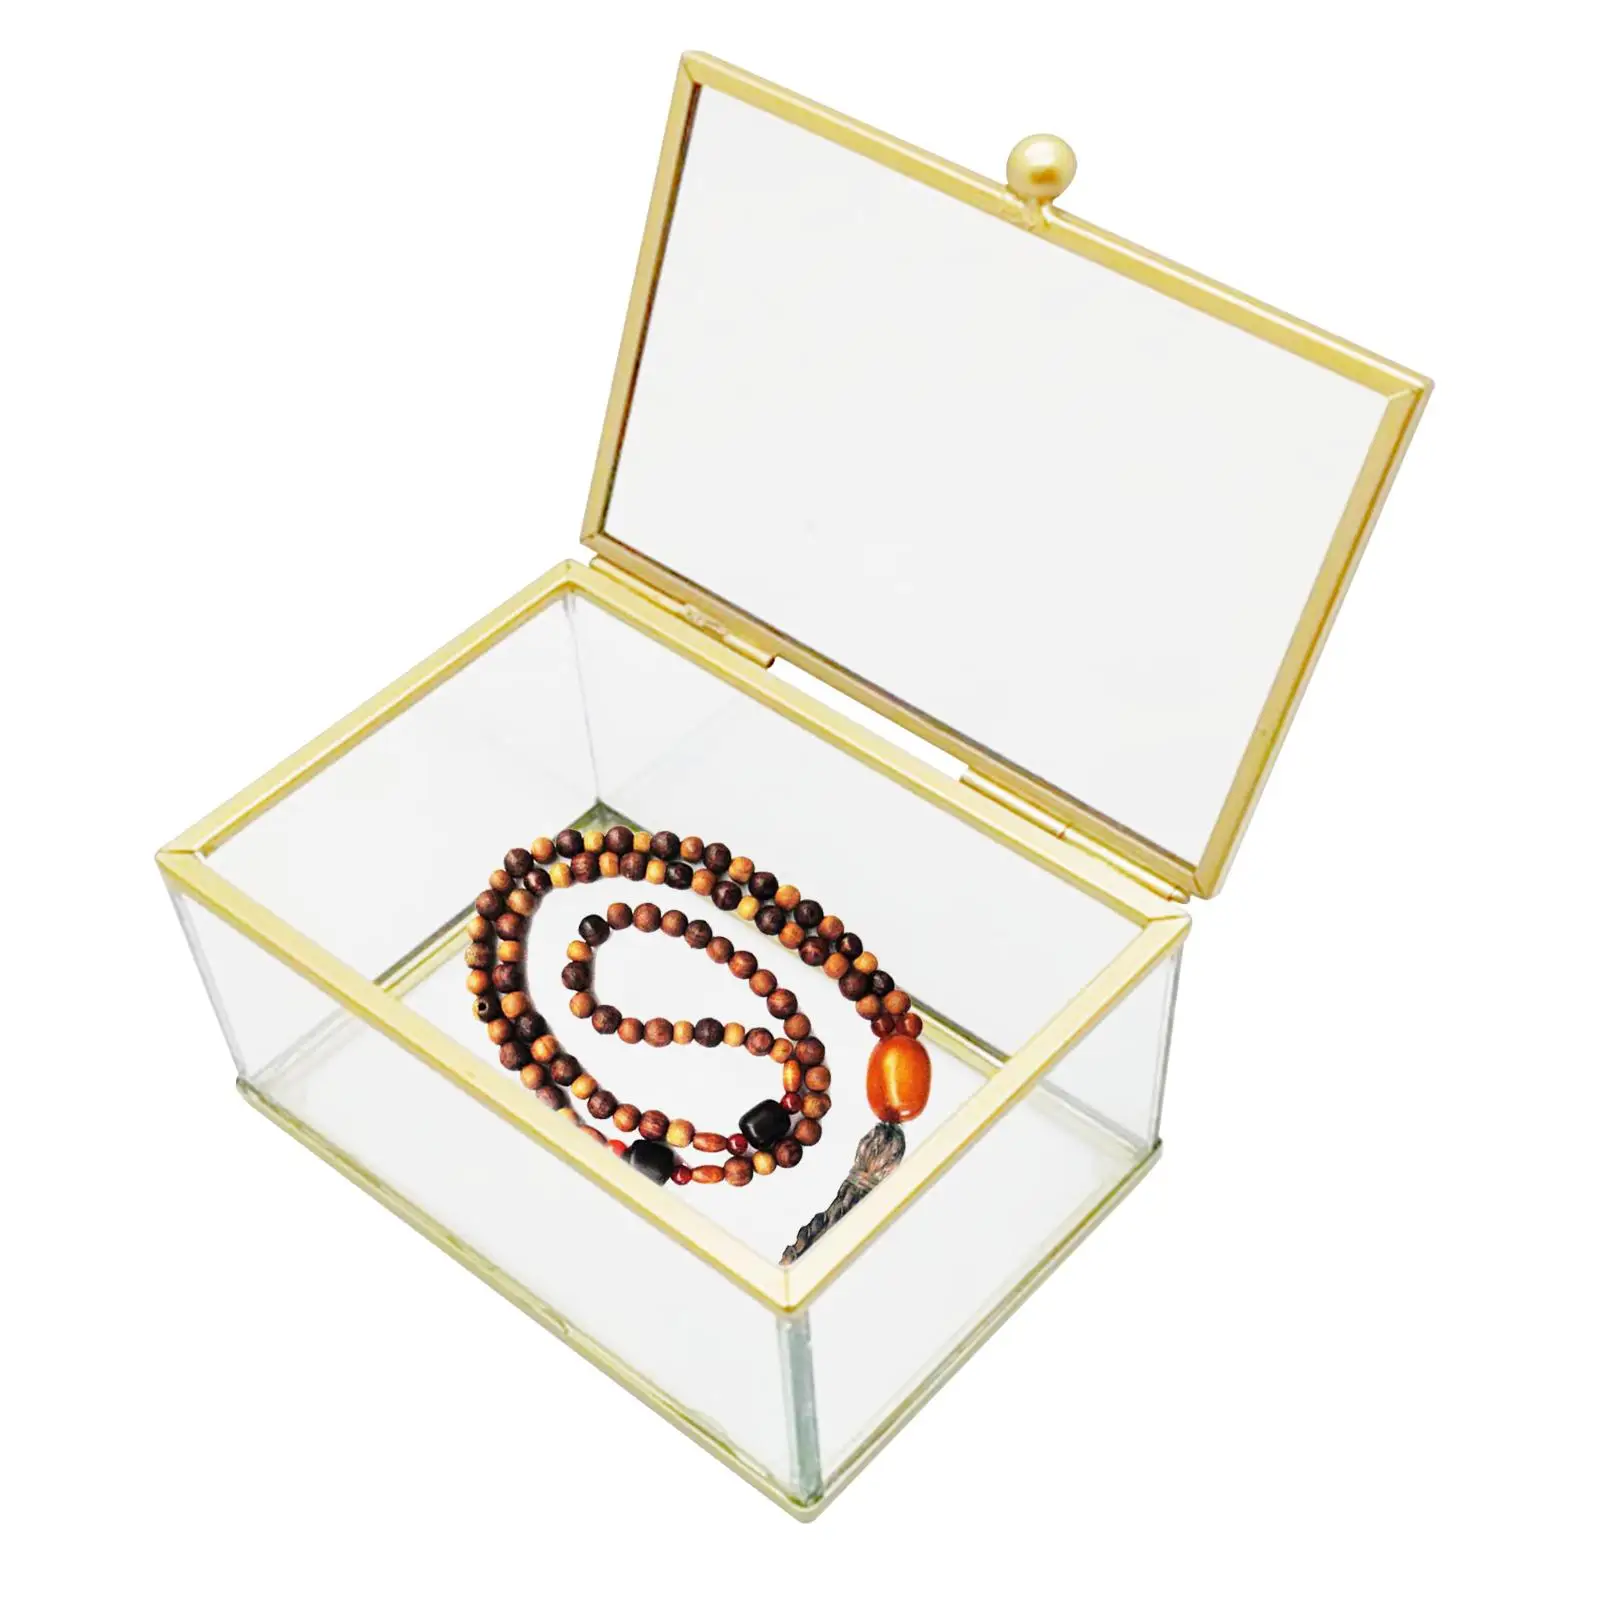 Glass Jewelry Box Keepsake Box for Women and Girls Storage Trinket Display Case Decorative Storage Box for Wedding Birthday Gift